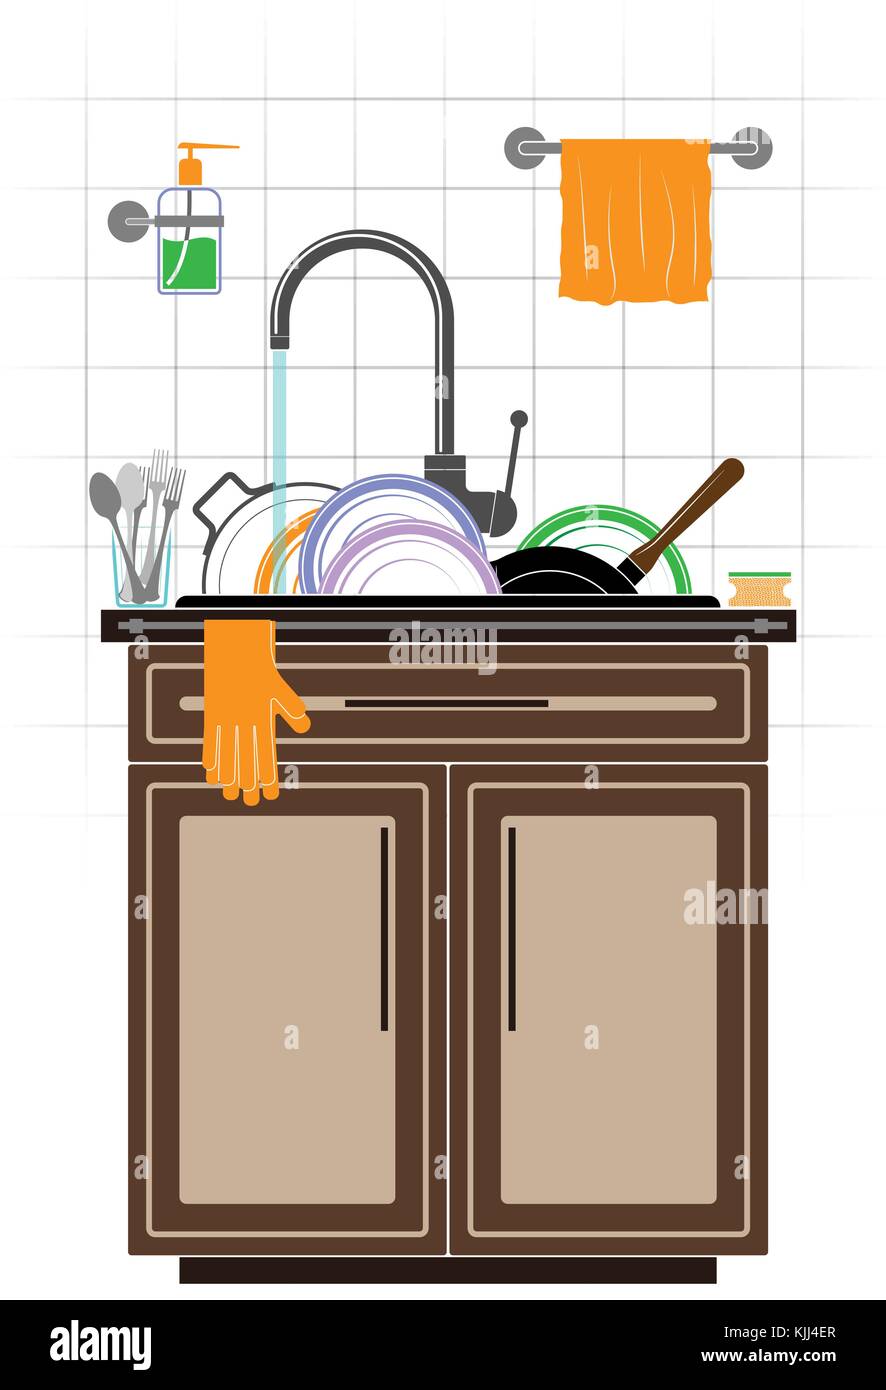 Une montagne de plats sales sales dans l'évier dans la cuisine. plaques, casserole et poêle. mur carrelé et meubles de cuisine. Illustration de Vecteur